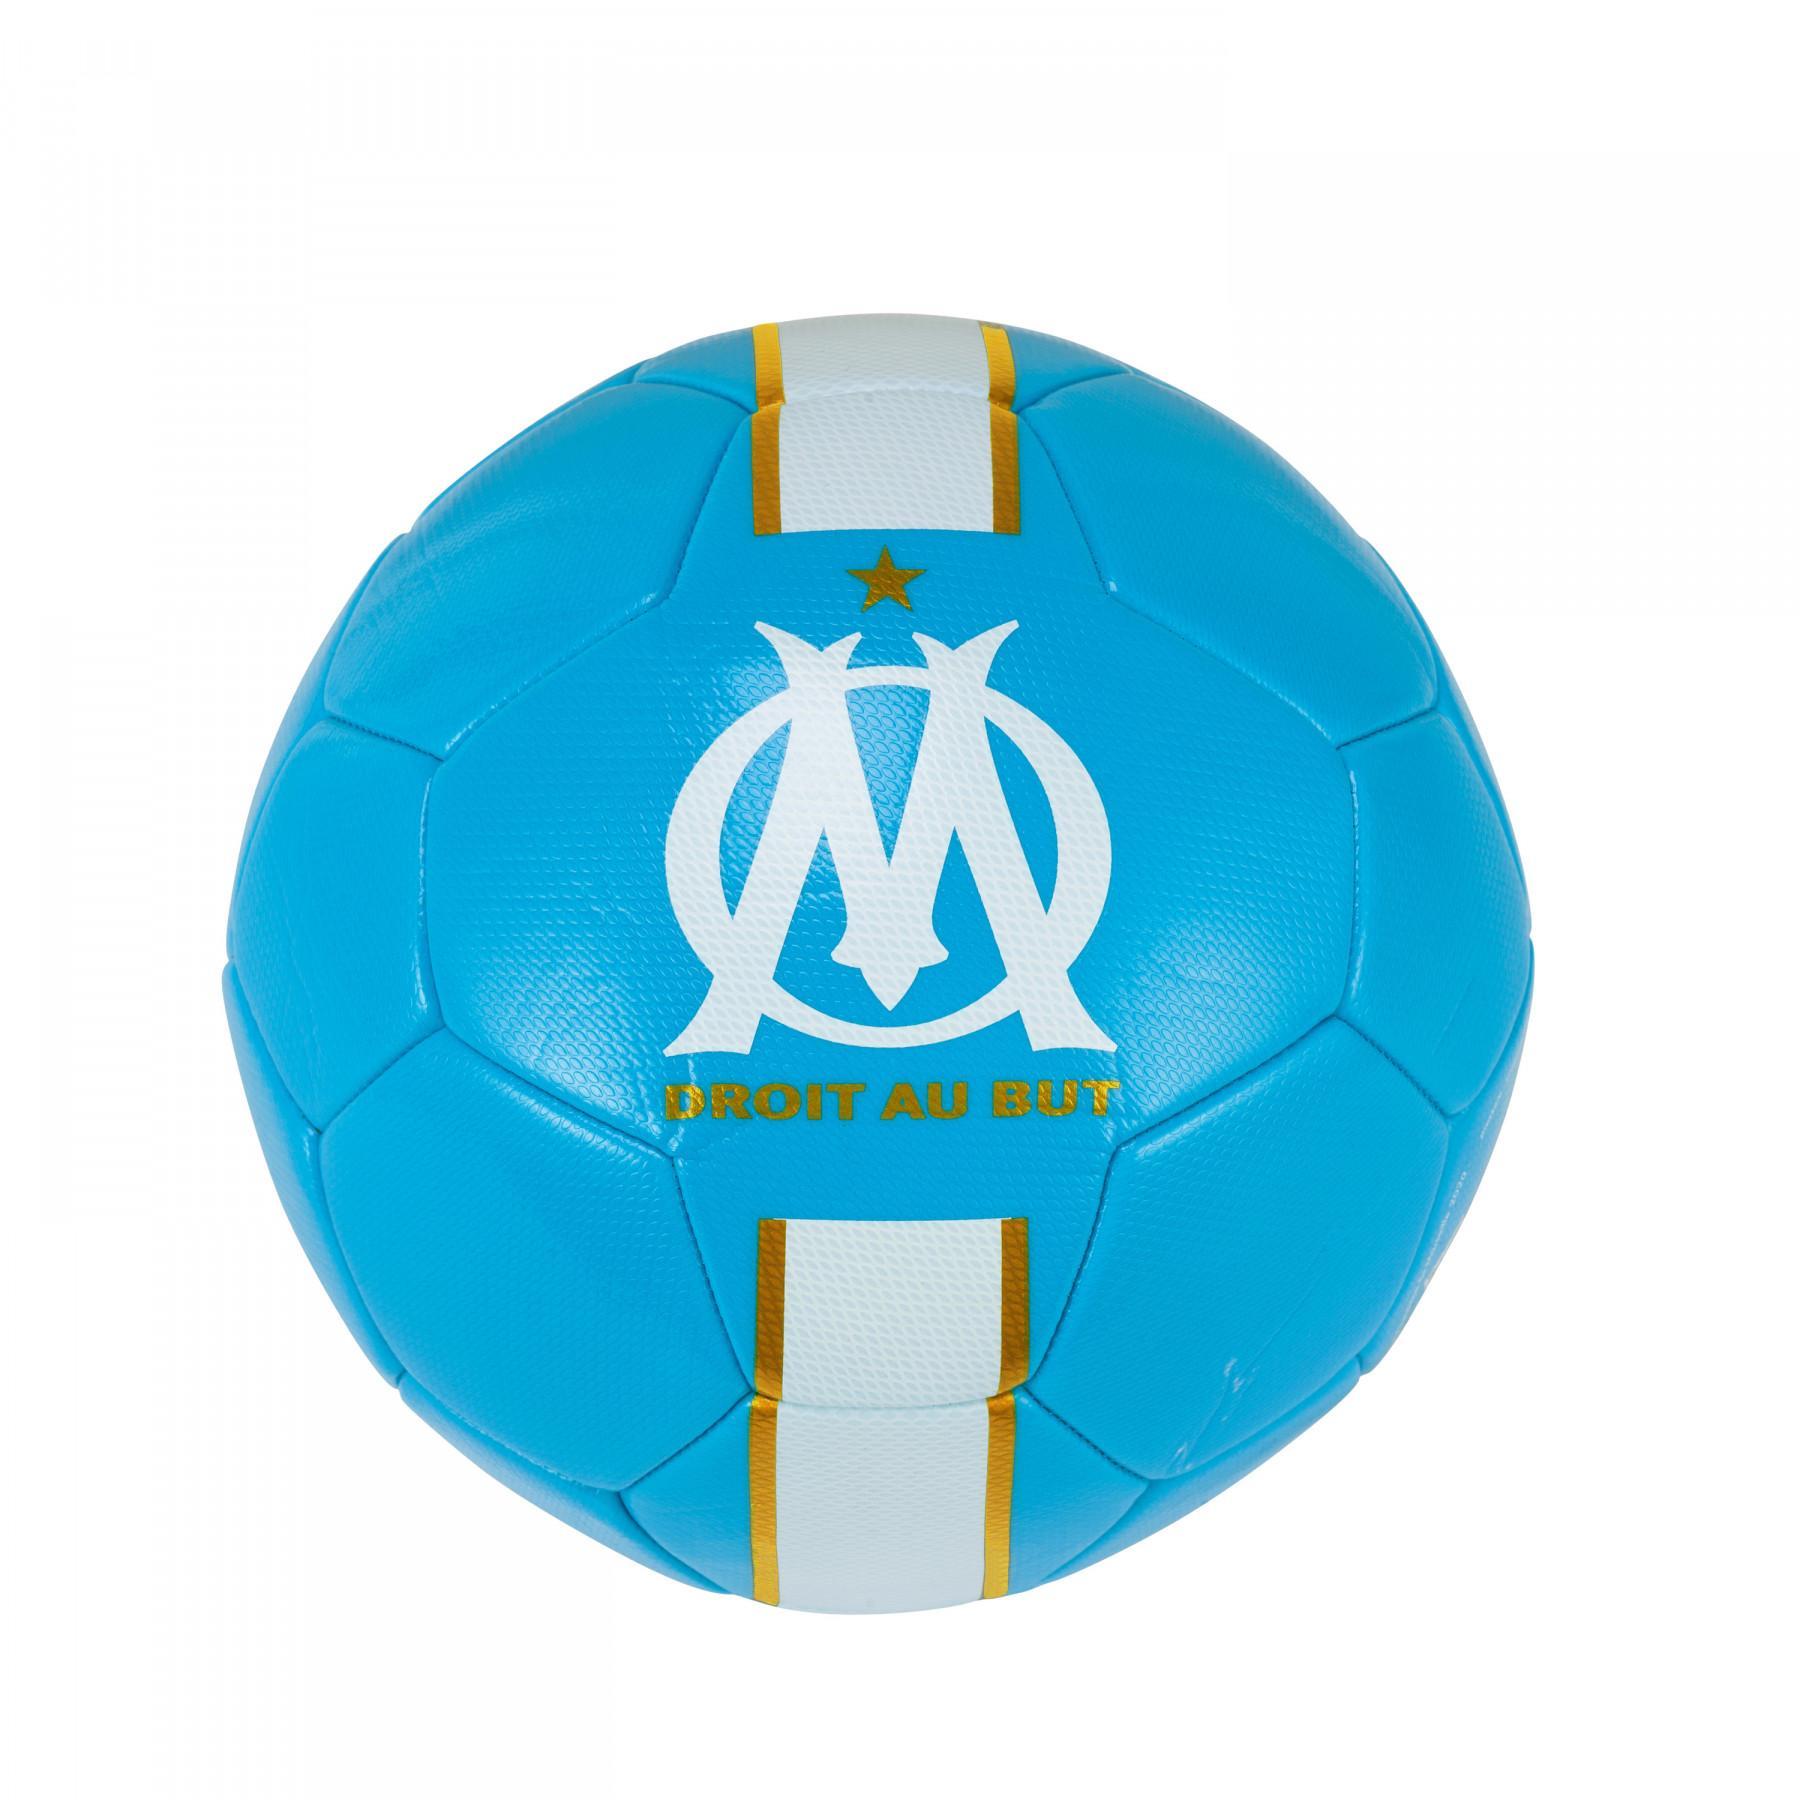 Ballon De Foot OM Logo M20060 Bleu Clair